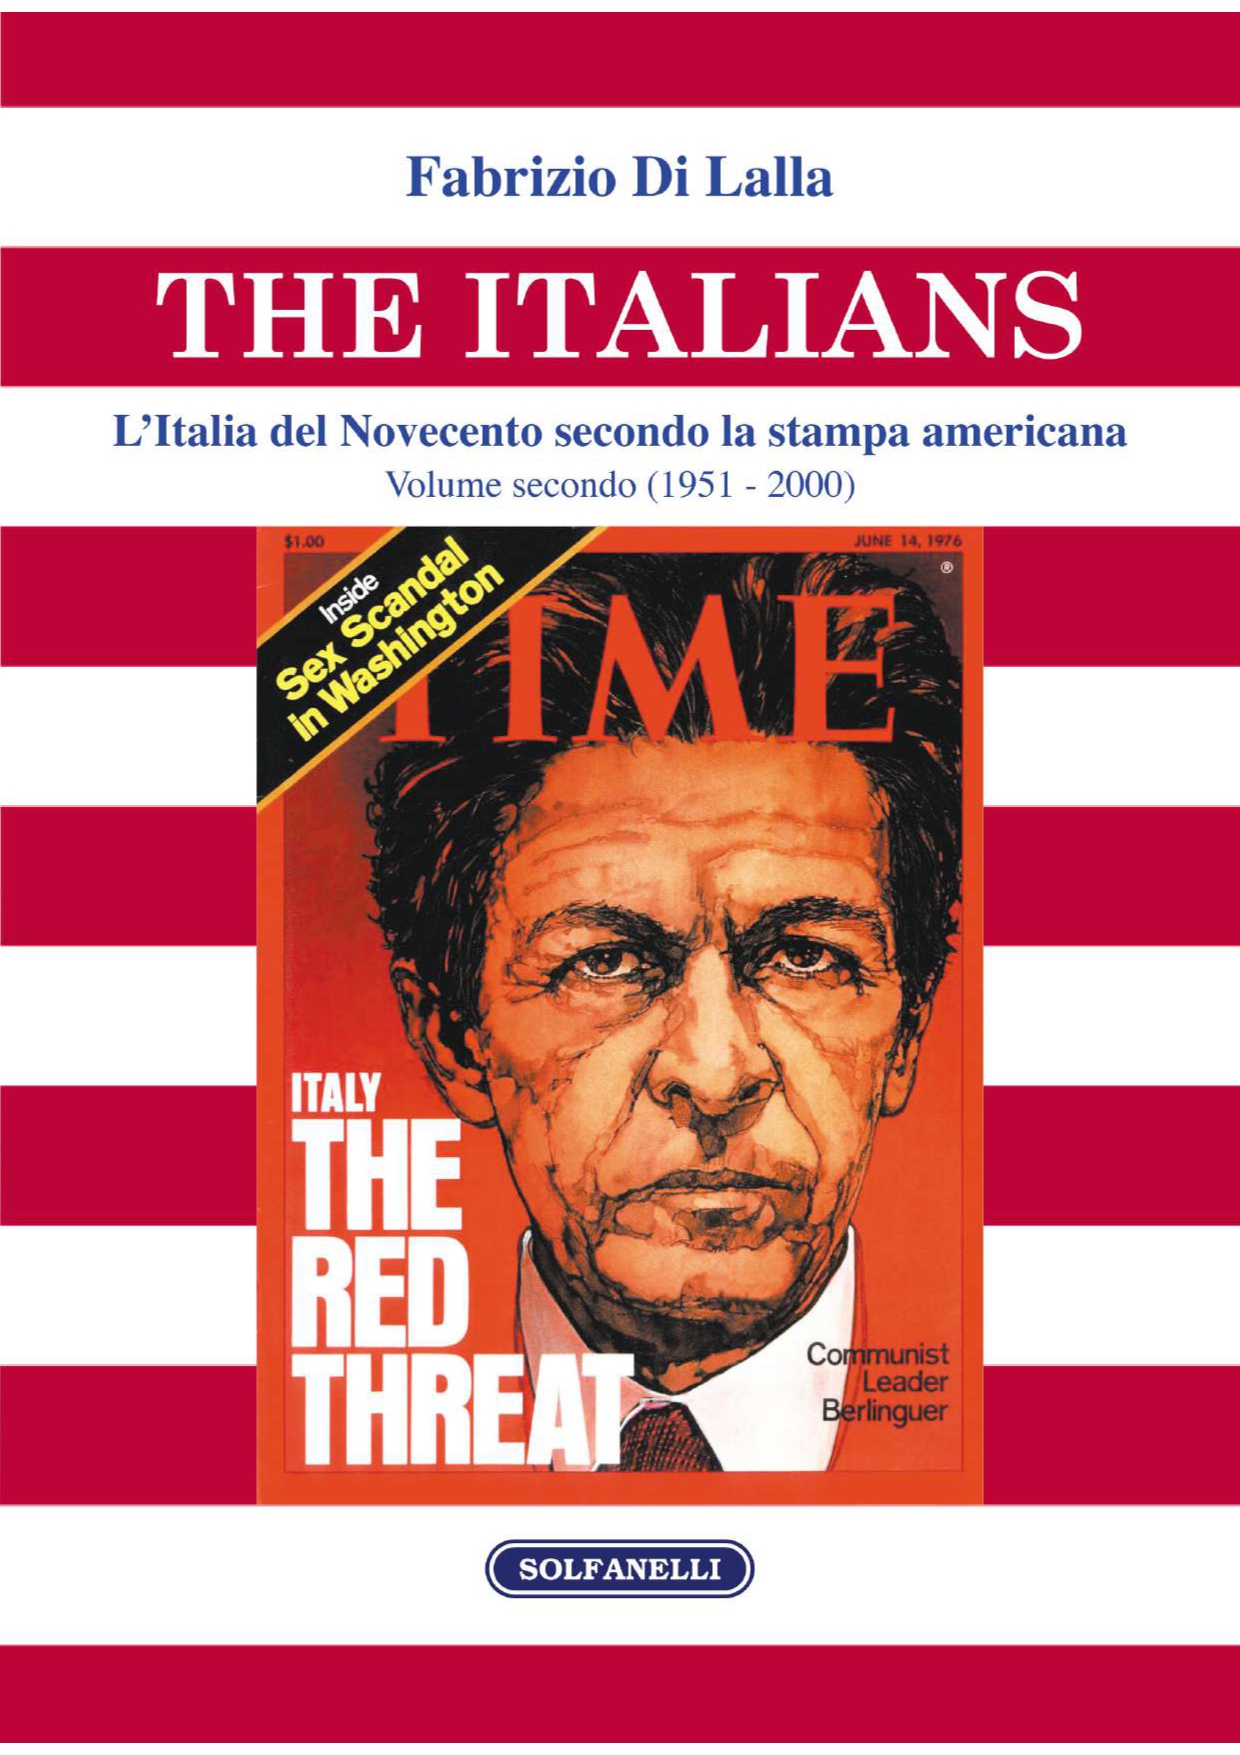 THE ITALIANS L’Italia secondo la stampa americana (1951 - 2000)